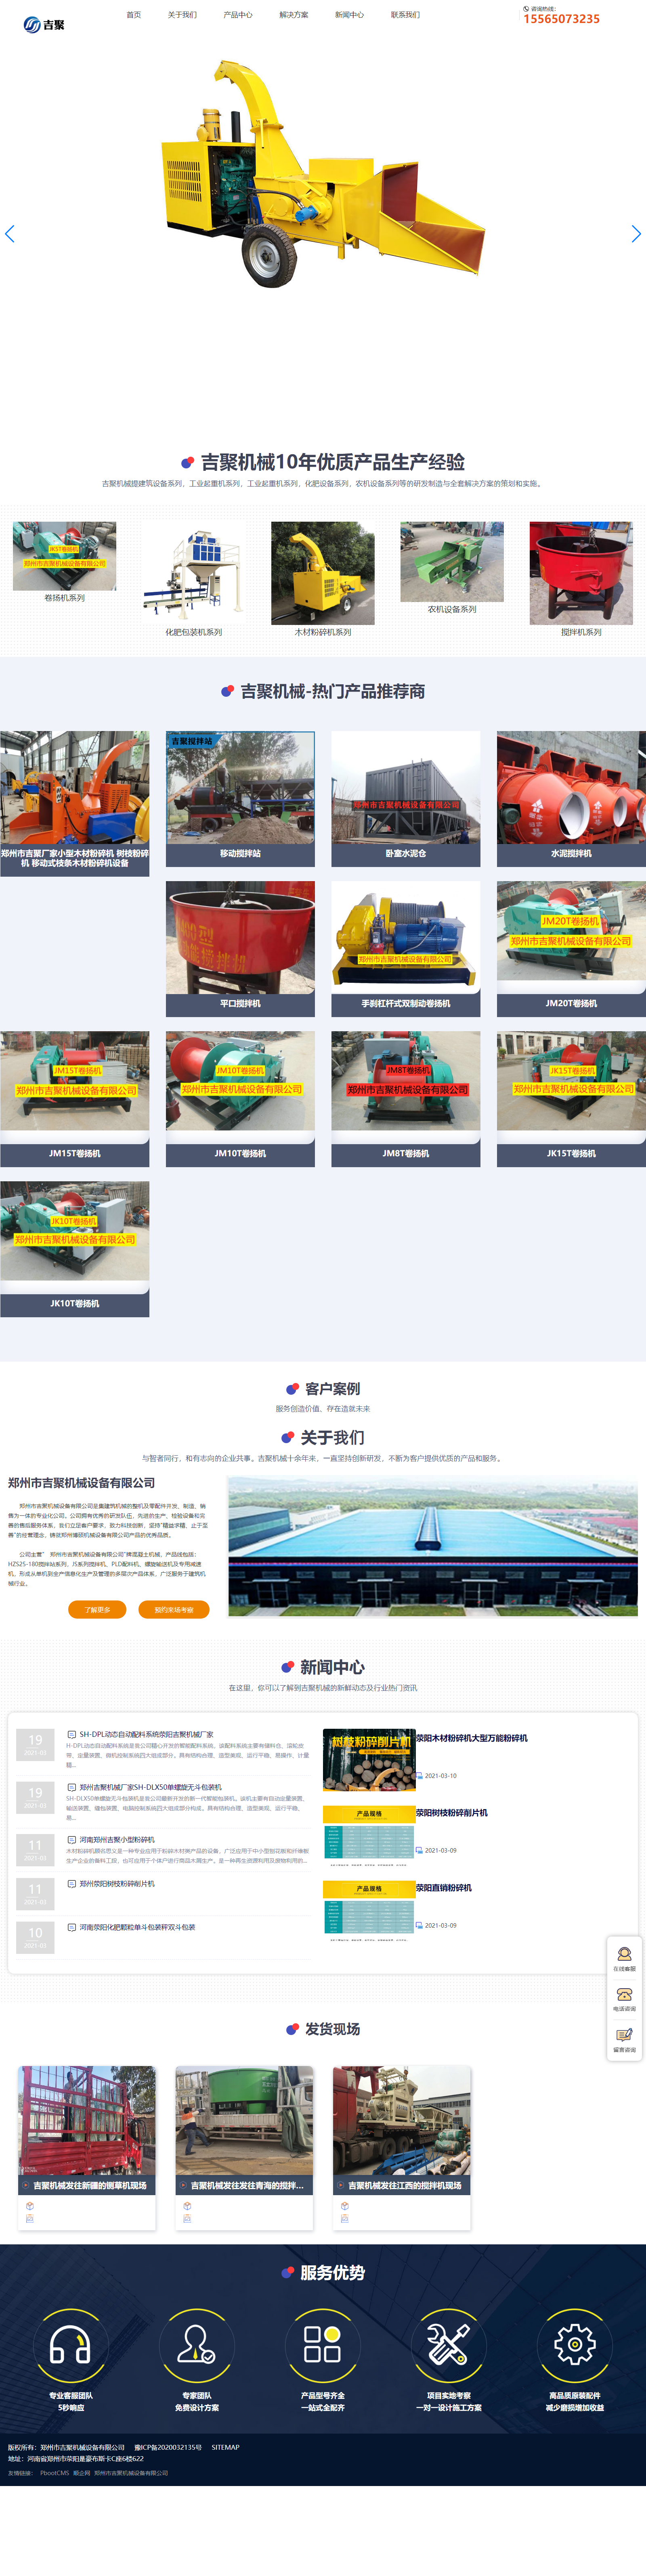 郑州市吉聚机械设备有限公司网站案例